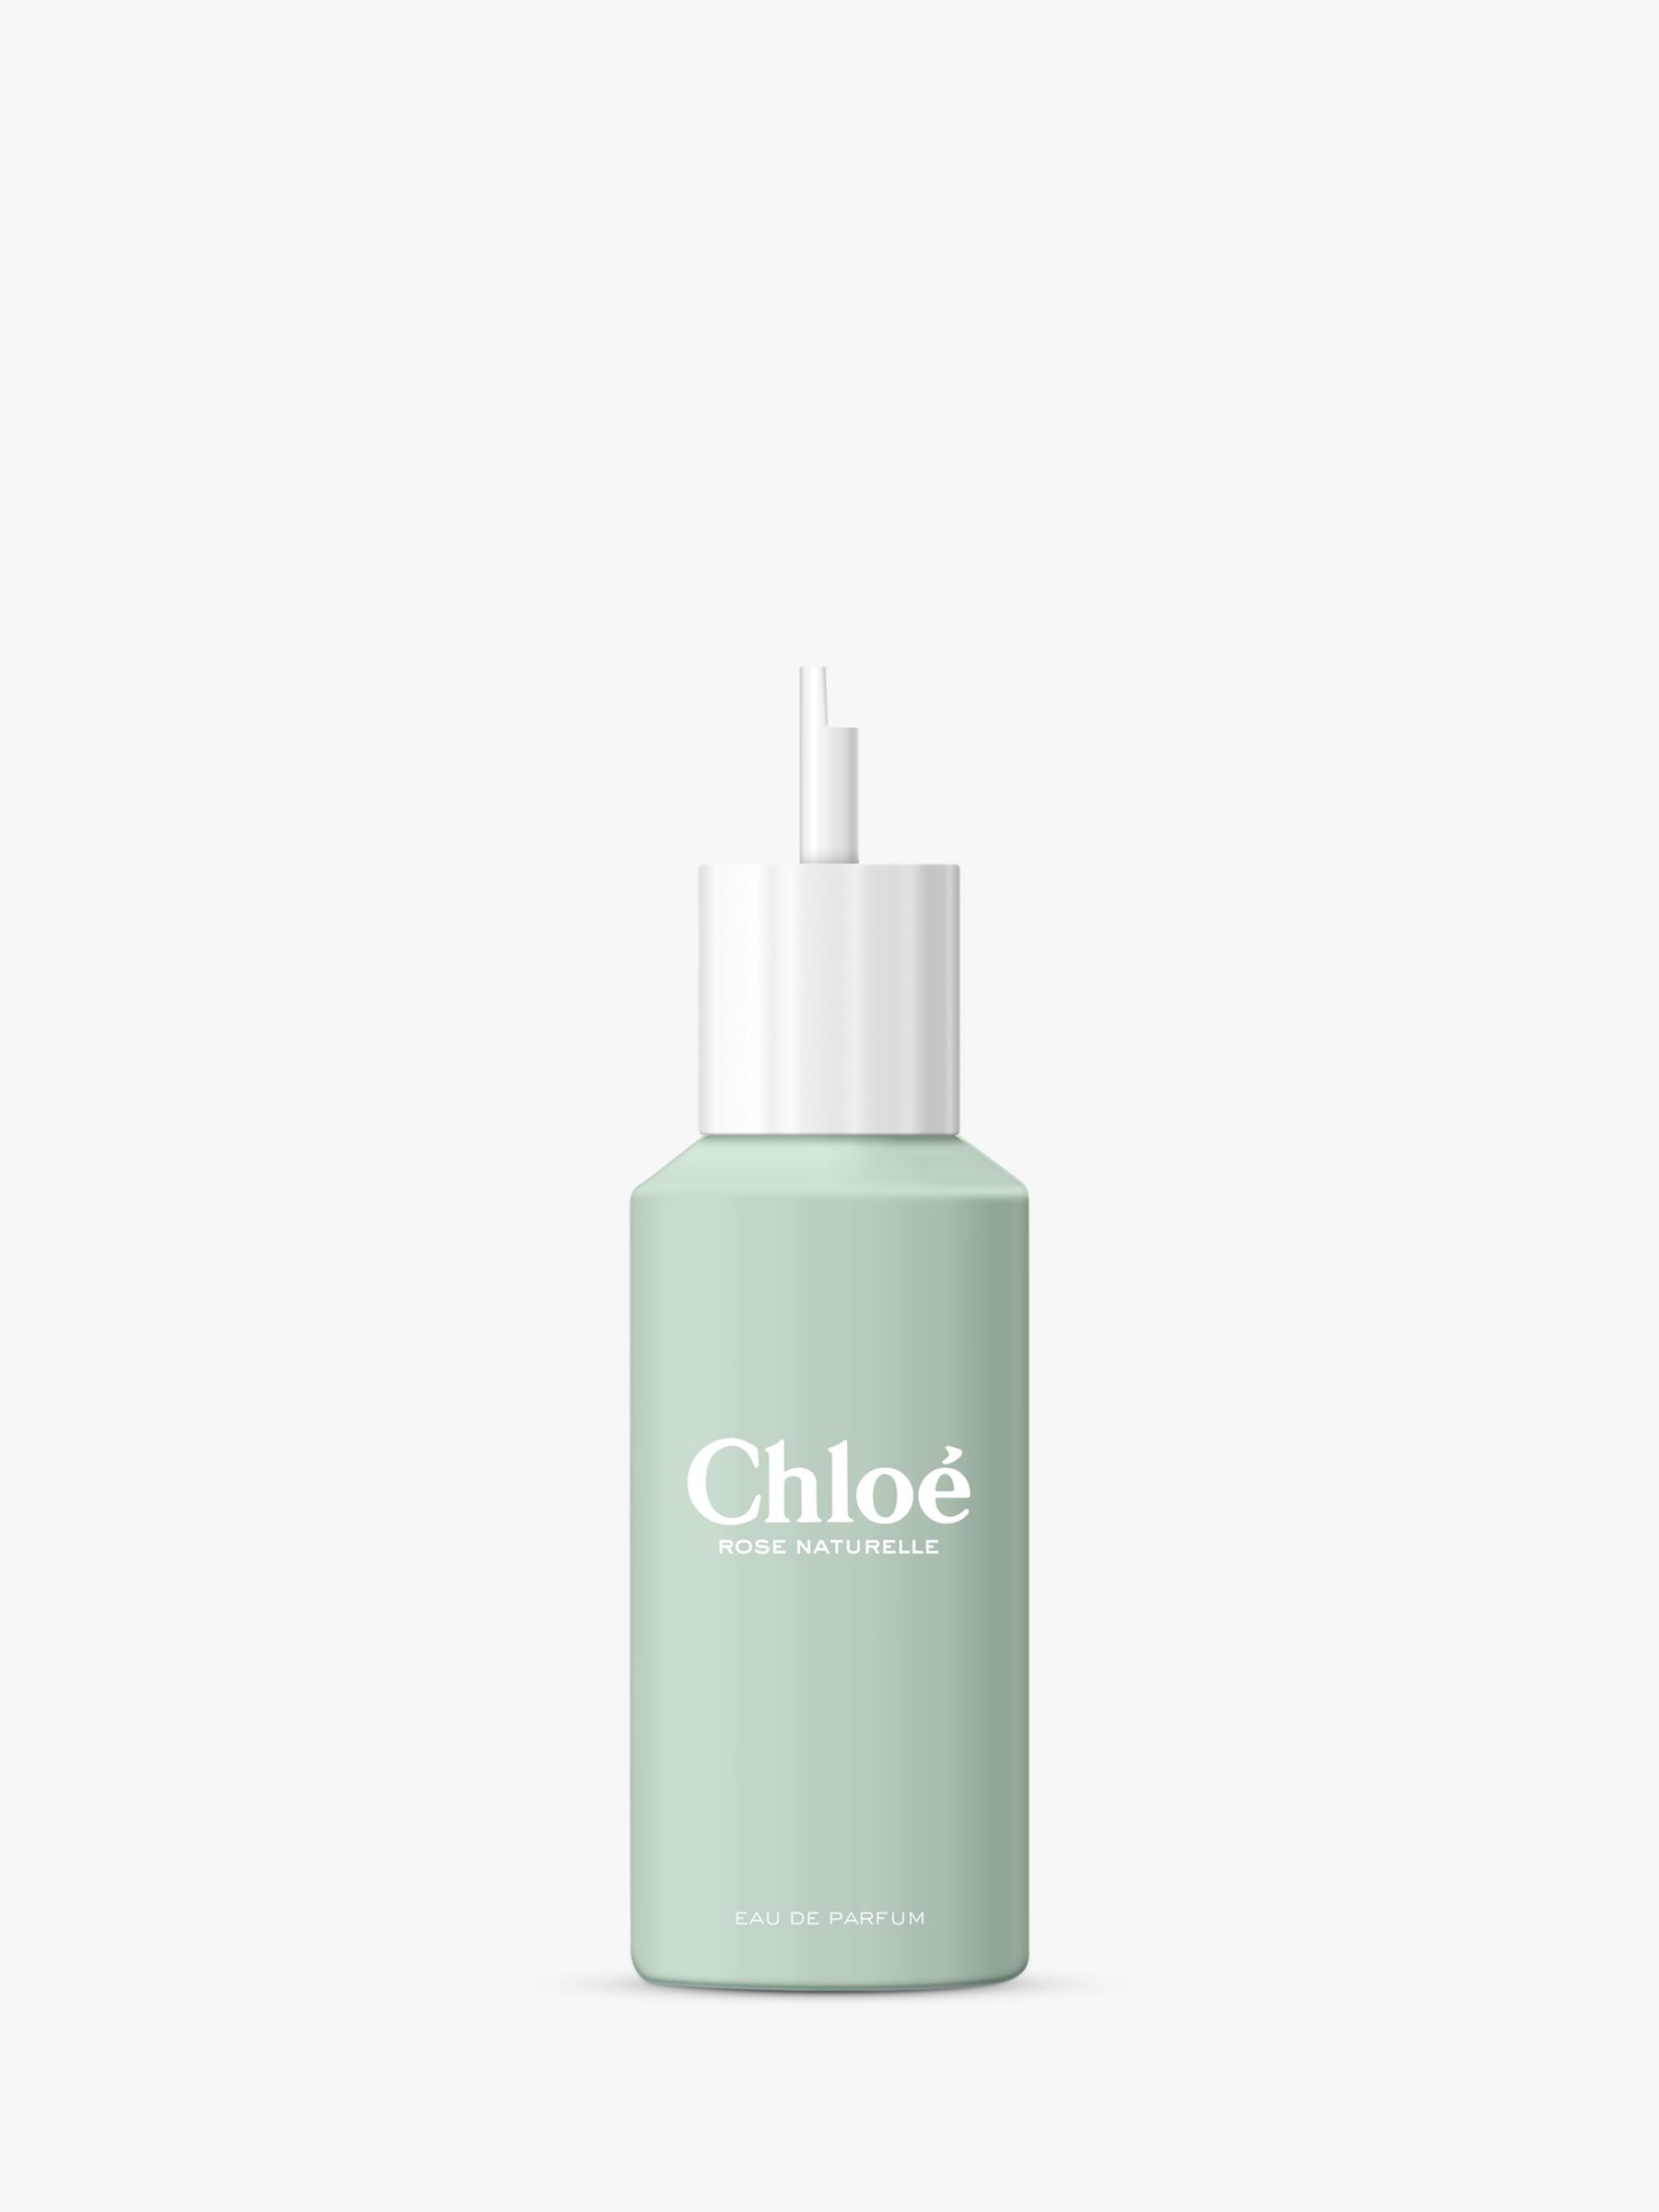 Chloé Rose Naturelle Eau de Parfum Refill, 150ml 1